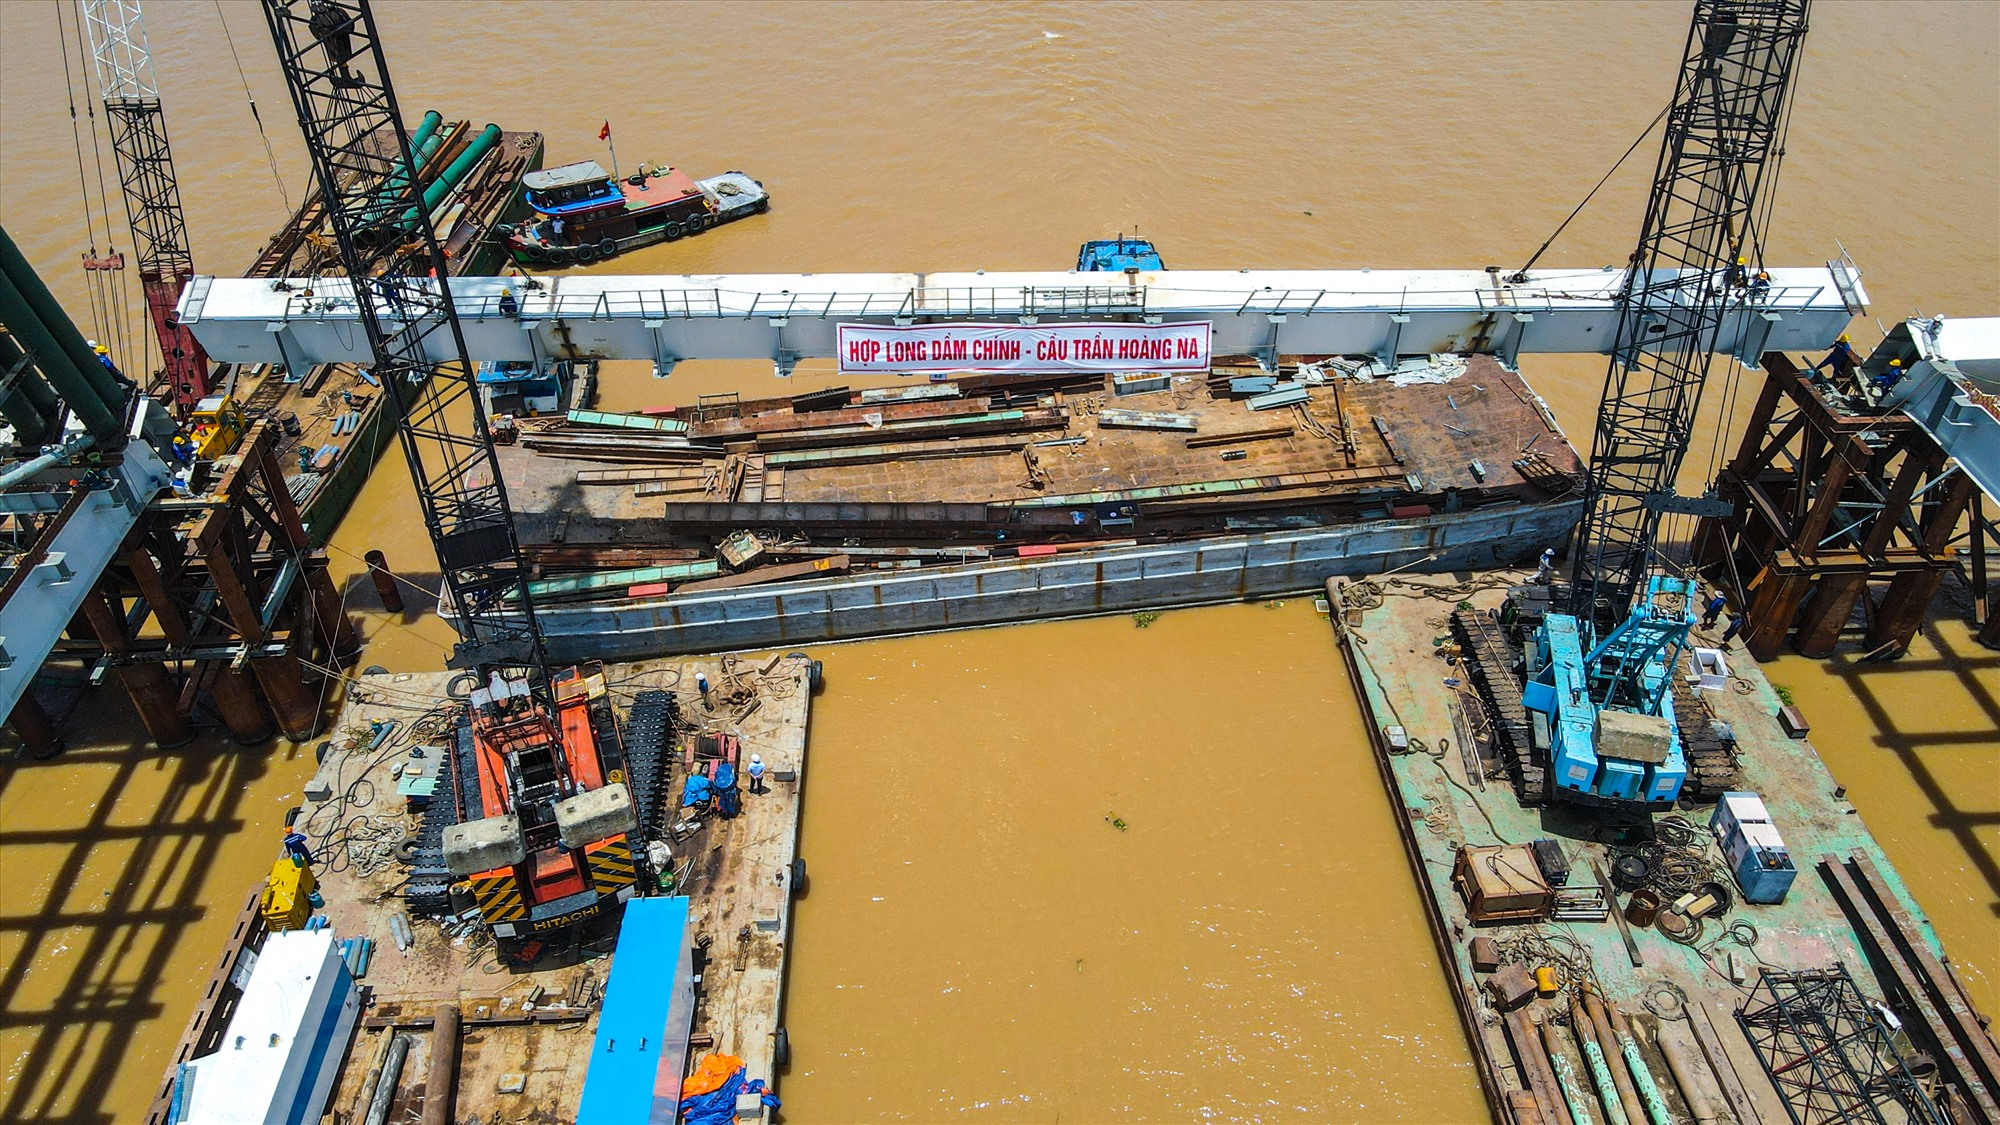 Đoạn dầm dọc bằng thép cuối cùng dài 53m, nặng 150 tấn được đơn vị thi công lắp vào nhịp giữa cầu Trần Hoàng Na (ở phía thượng lưu).